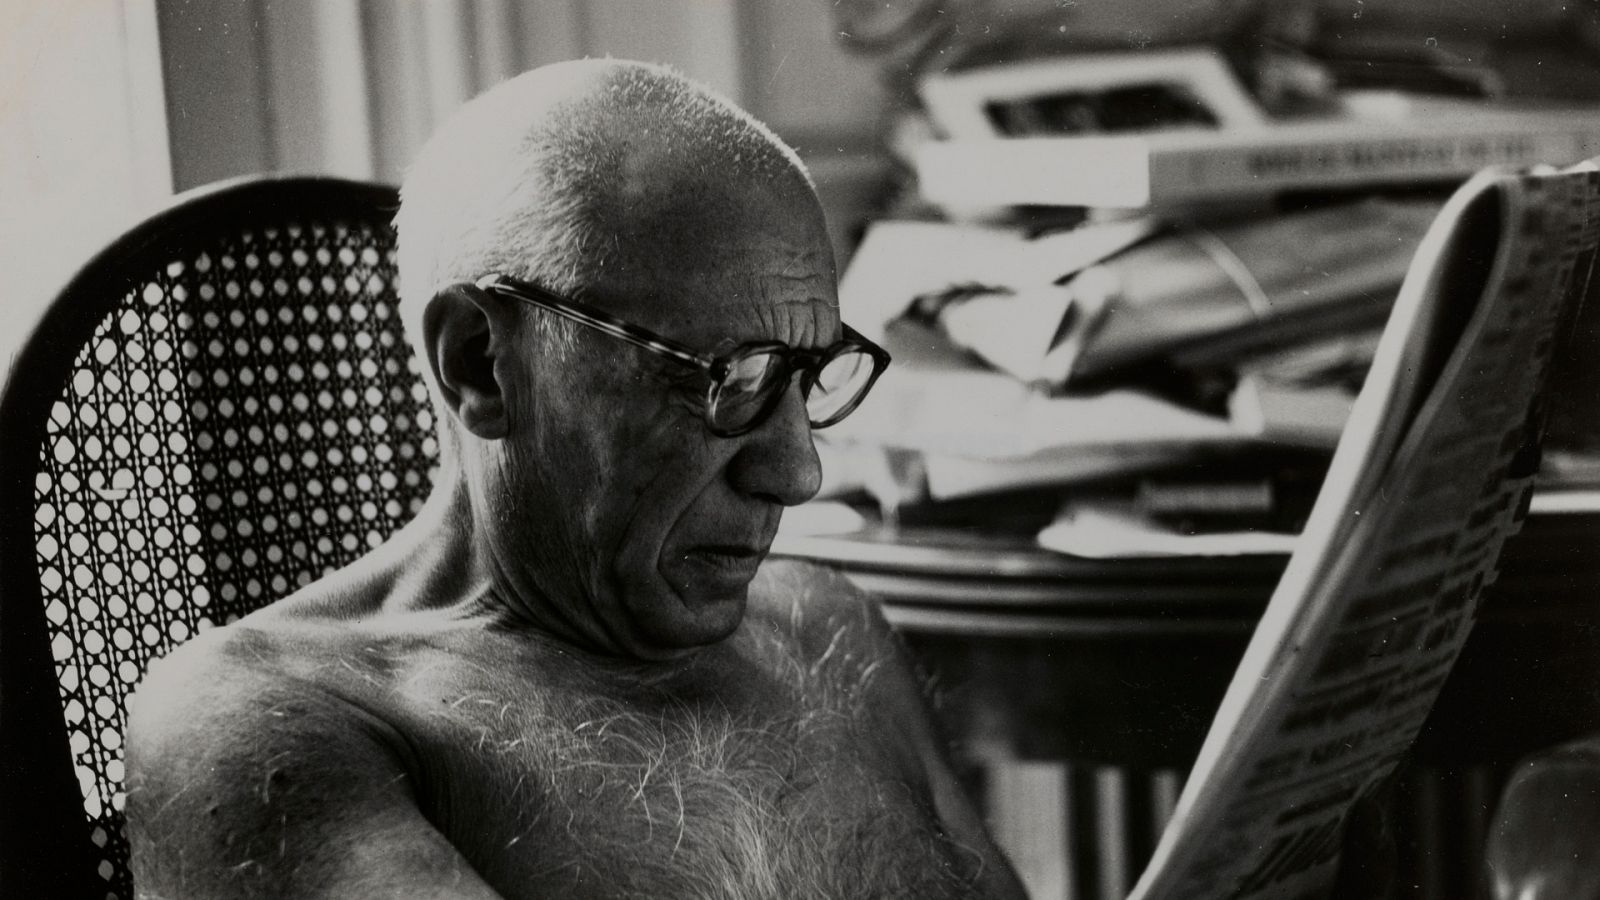 Somos documentales - Picasso, más allá de la leyenda - Documental en RTVE